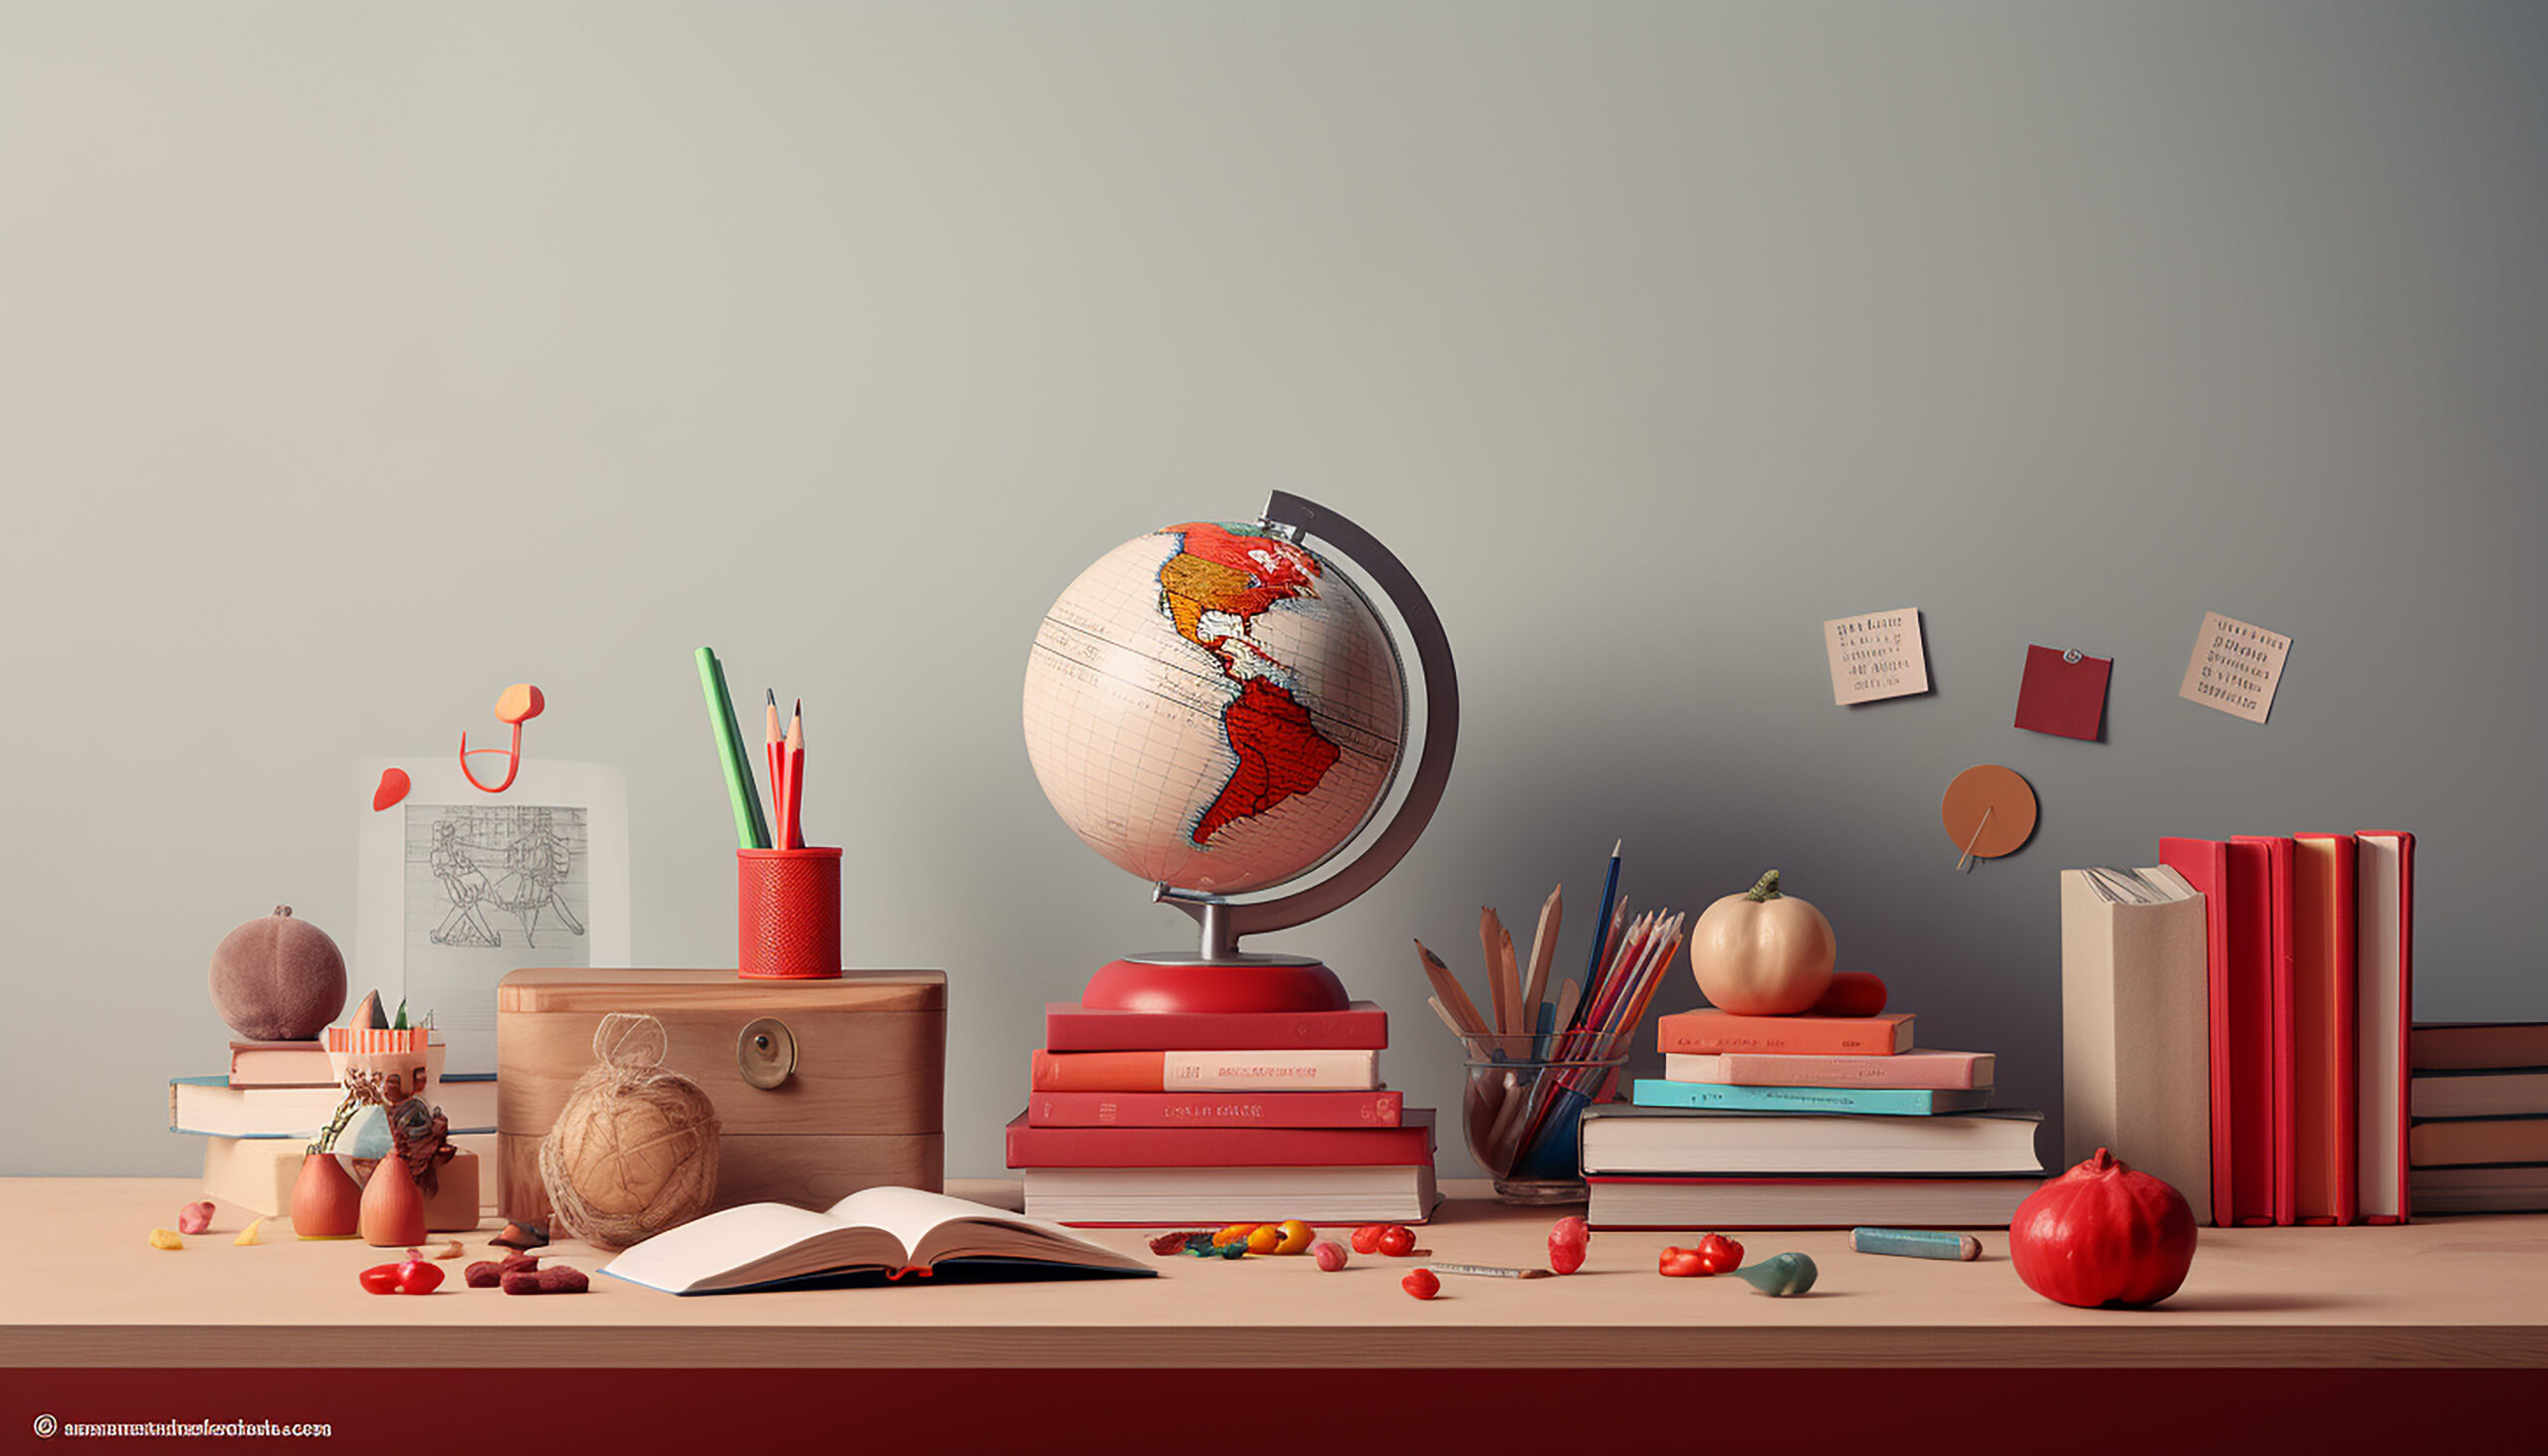 Grafika przedstawiająca atrybuty szkolne w kolorystyce biało czerwonej takie jak globus, ksiazki, olowki itp na czerwonym blacie biurka przy szarej scianie